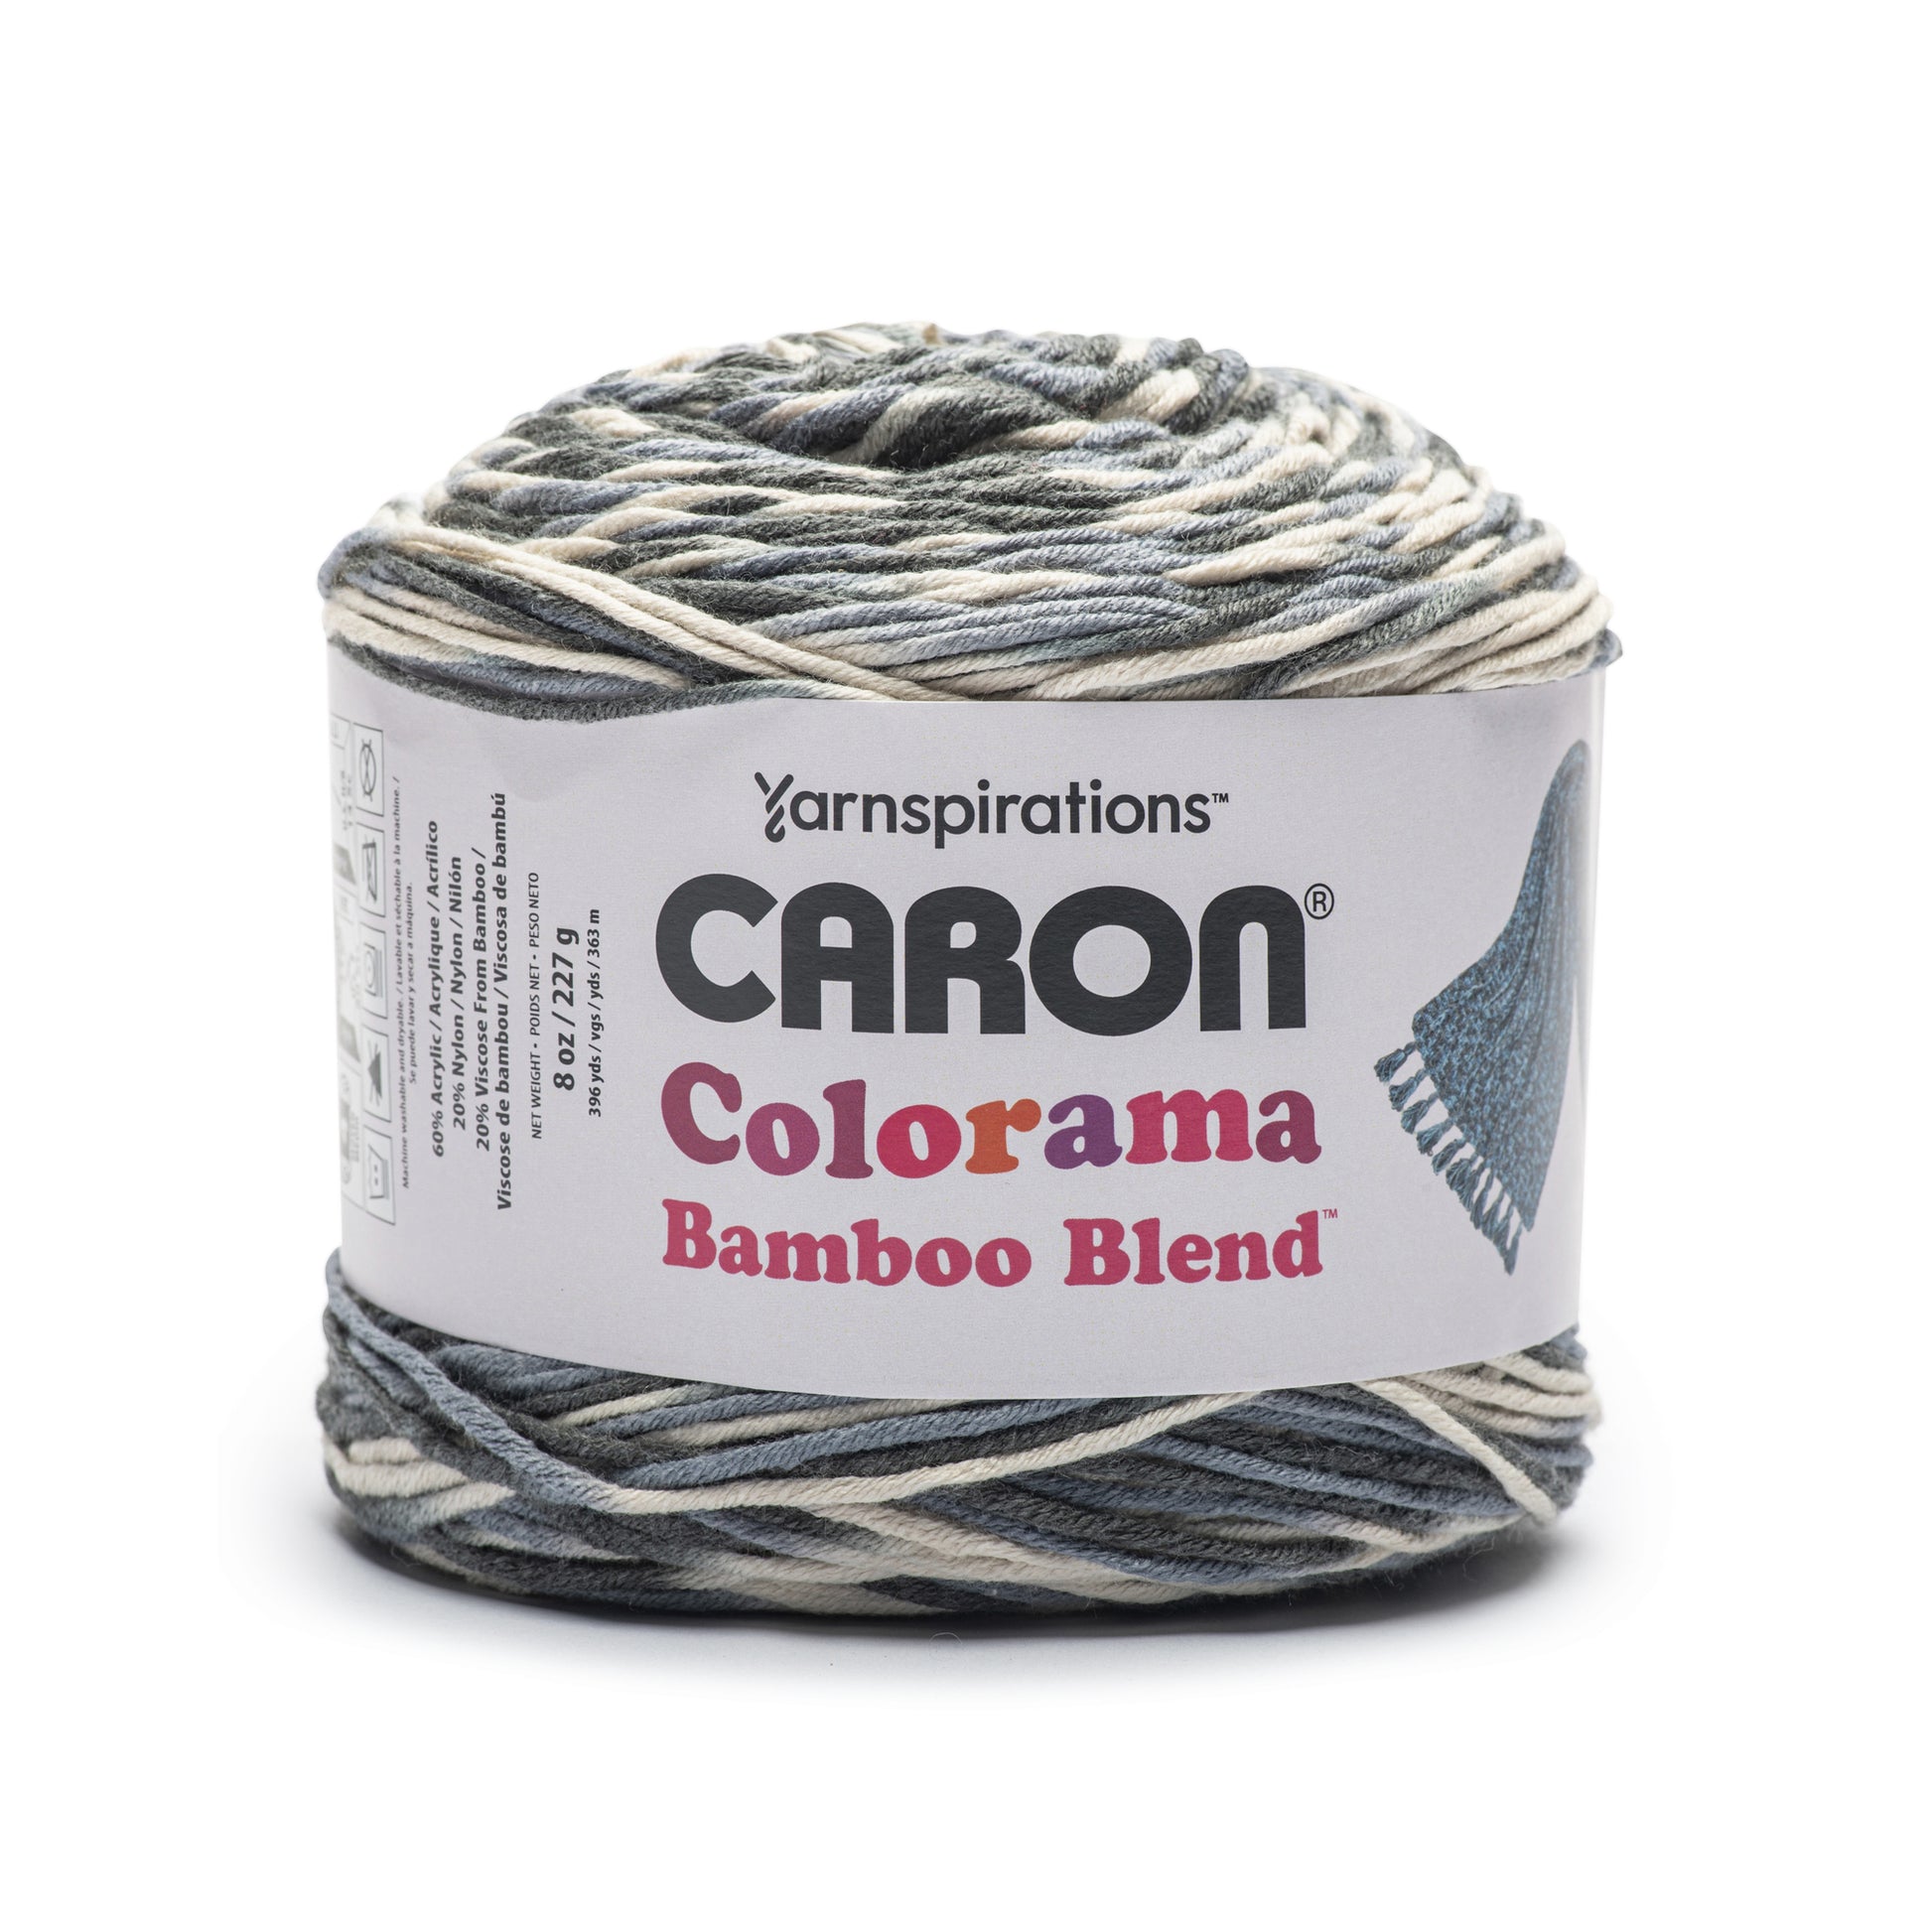 Caron Colorama Bamboo Blend Yarn (227g/8oz)